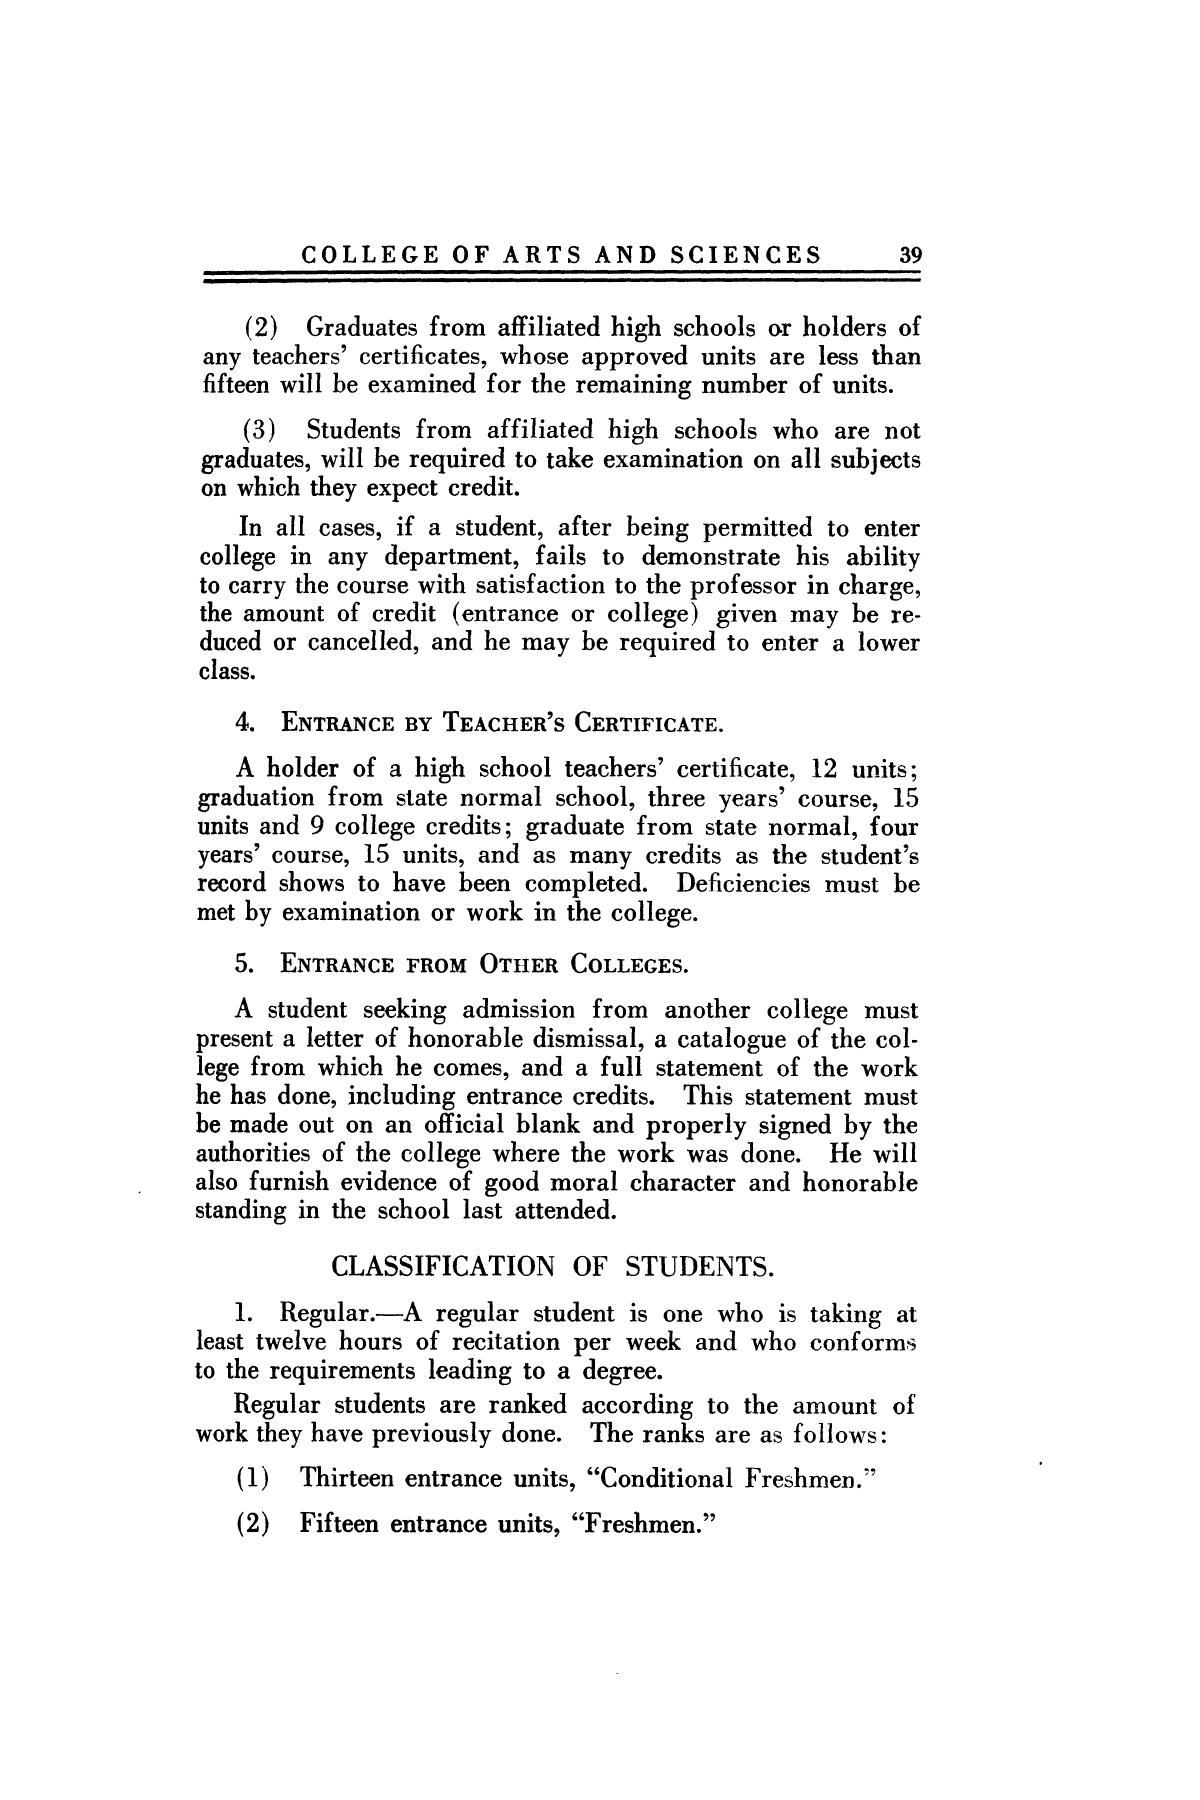 Catalog of Abilene Christian College, 1923-1924
                                                
                                                    39
                                                